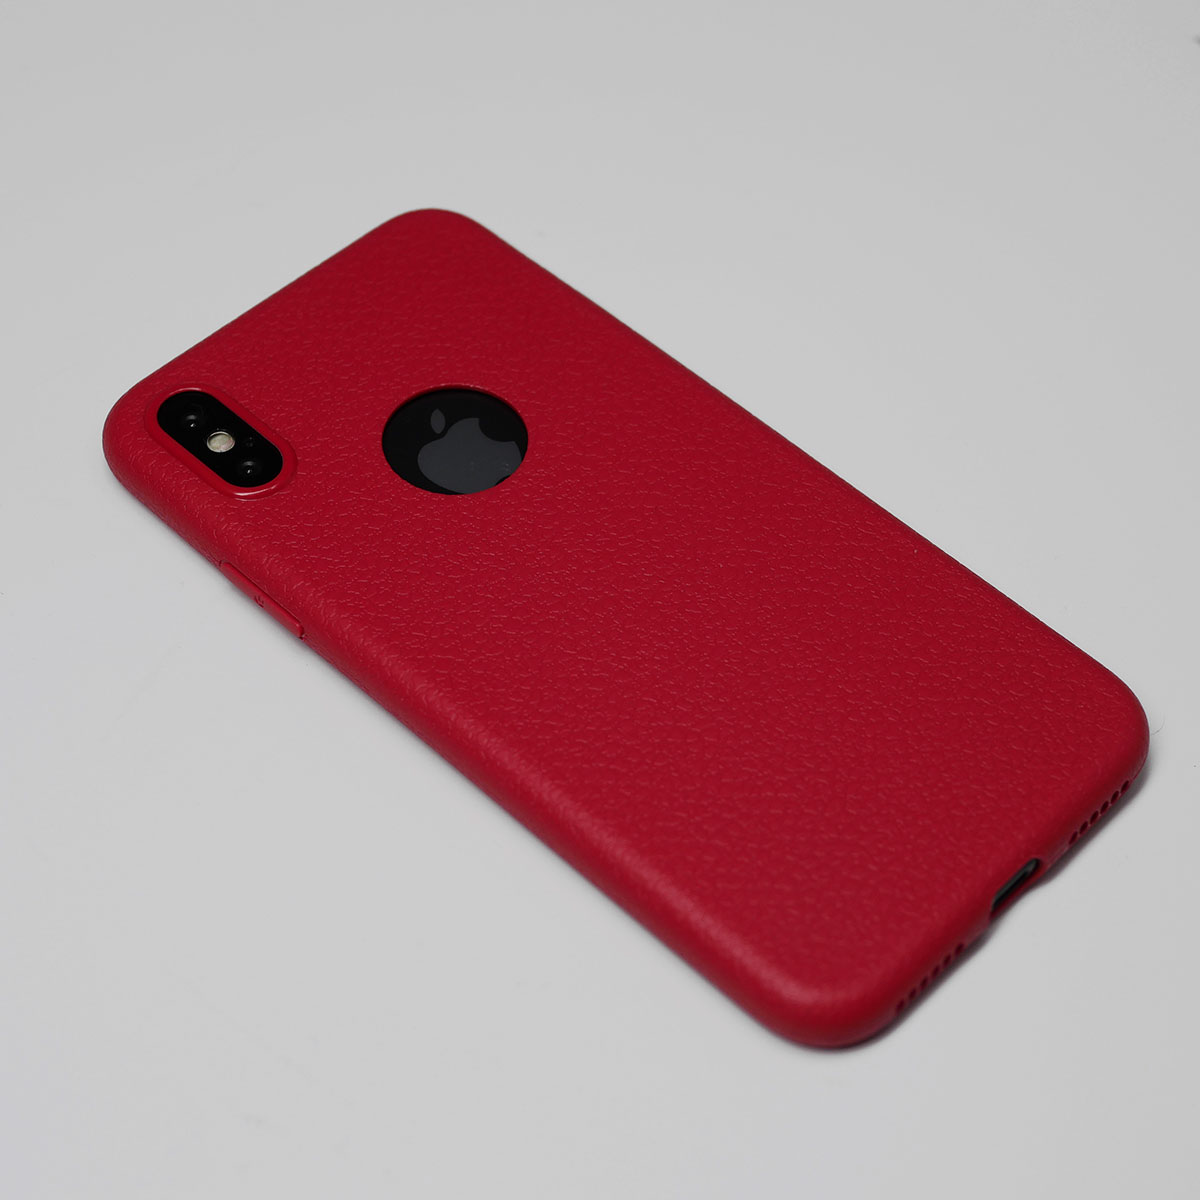 138098 เคส iPhone X สีแดง
